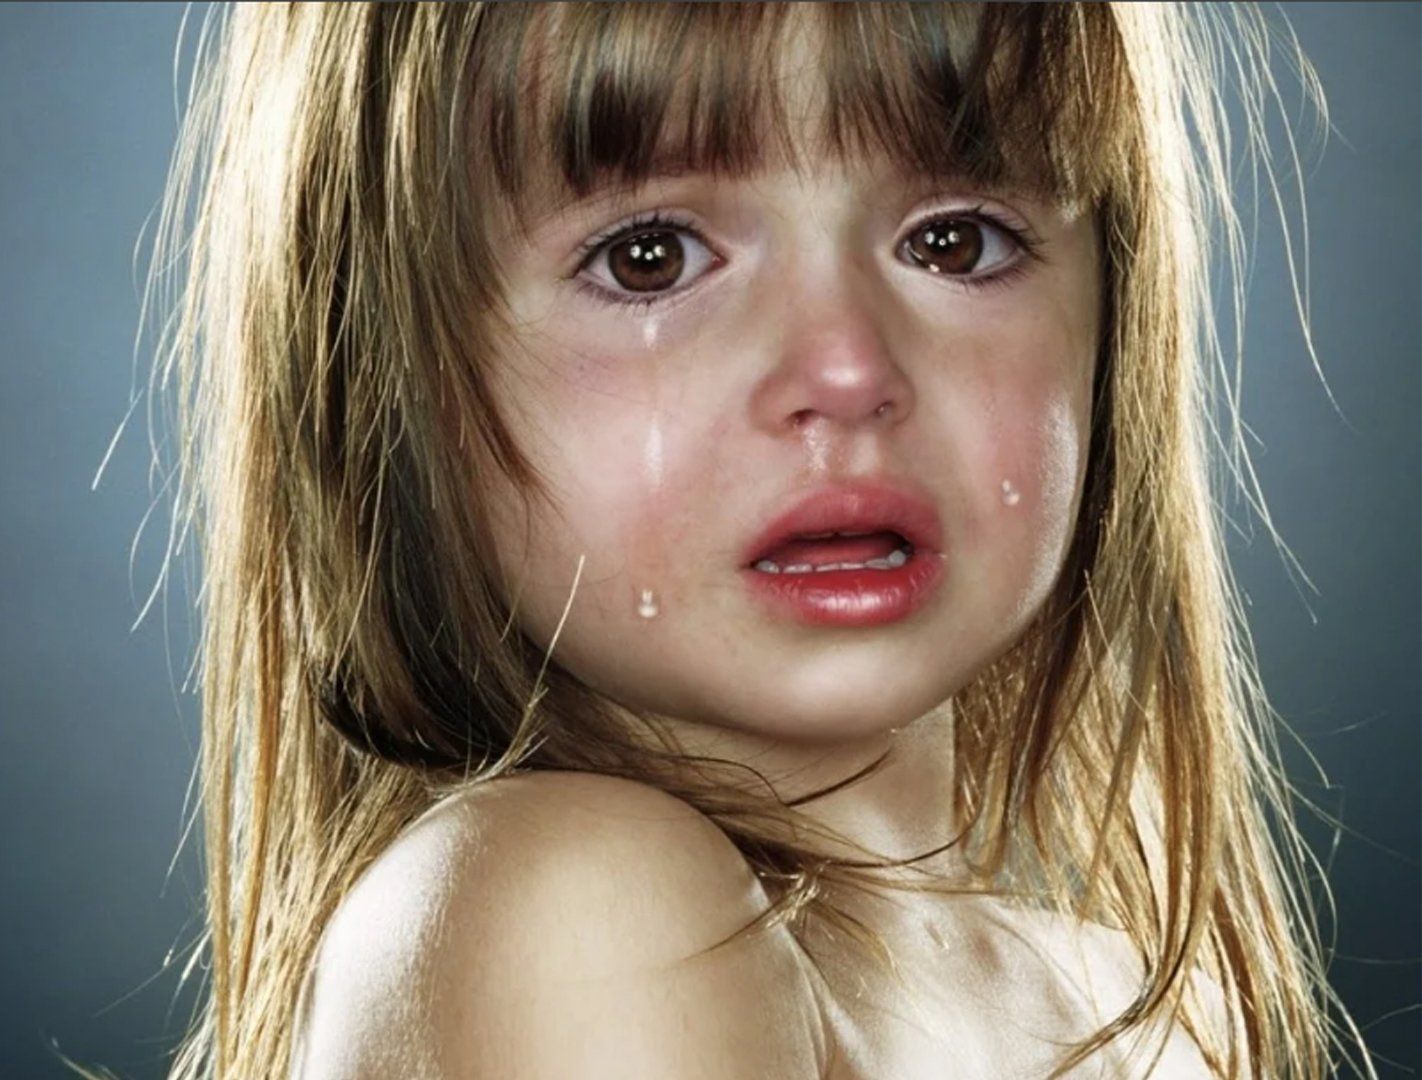 Плачу от подарка. Джилл Гринберг фотограф. Плачущая девочка. Детские слезы.